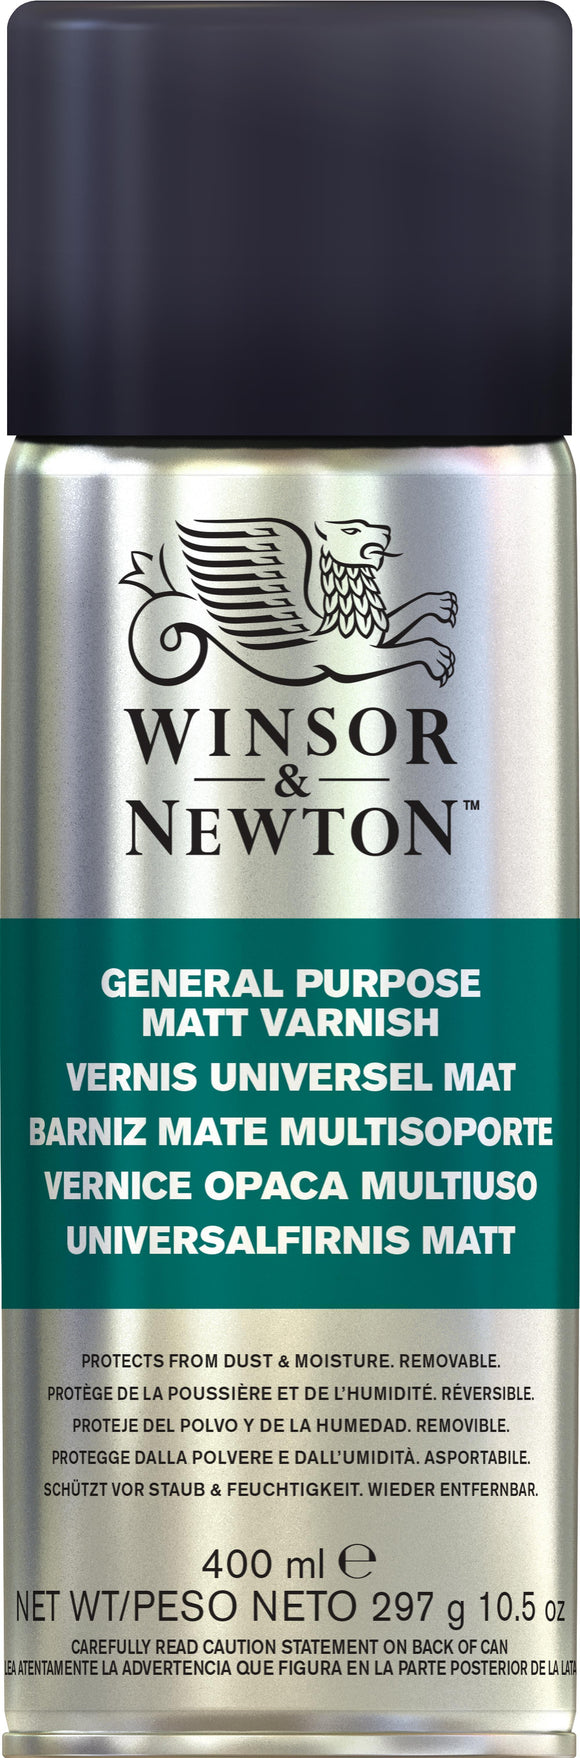 Winsor & Newton General Purpose Matt Varnish Spray 400Ml